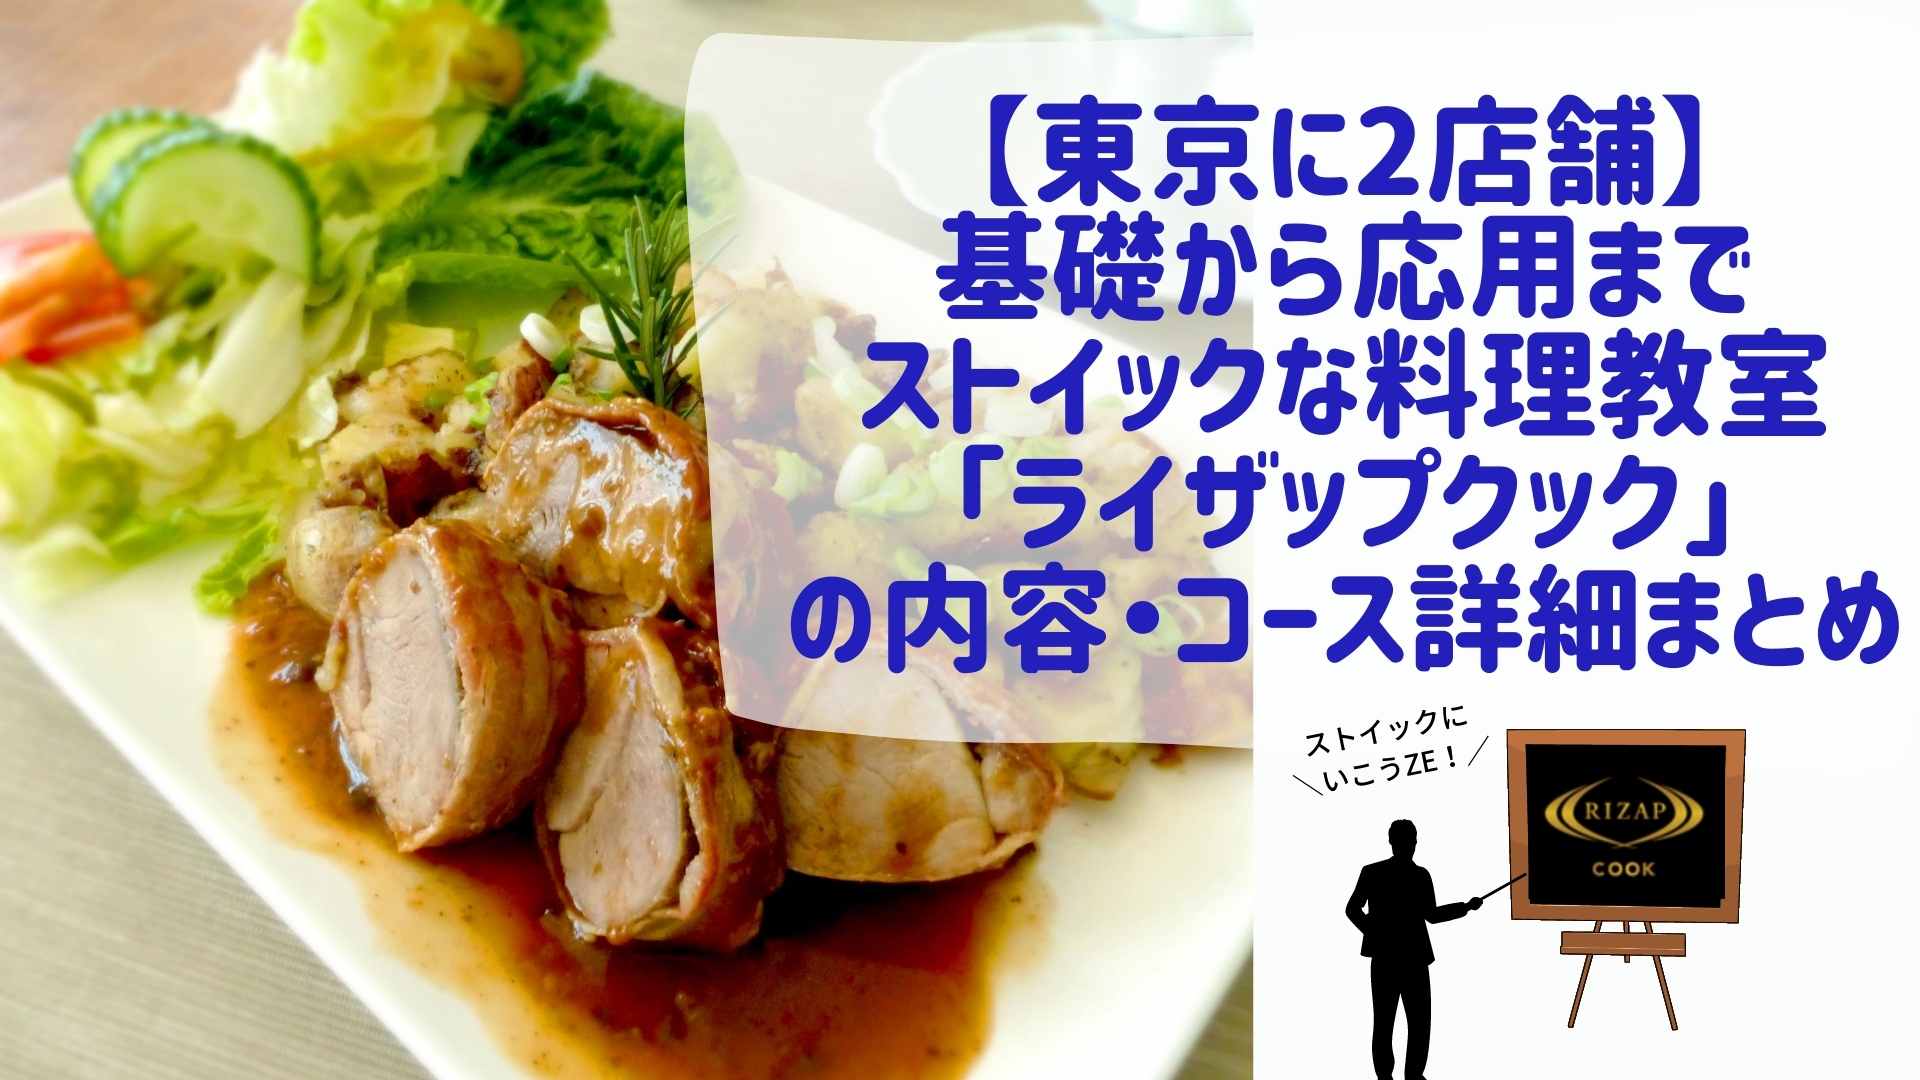 東京に2店舗 基礎から応用までストイックな料理教室 ライザップクック の内容 コース詳細まとめ アラフォー夫婦のまんねり脱却方法